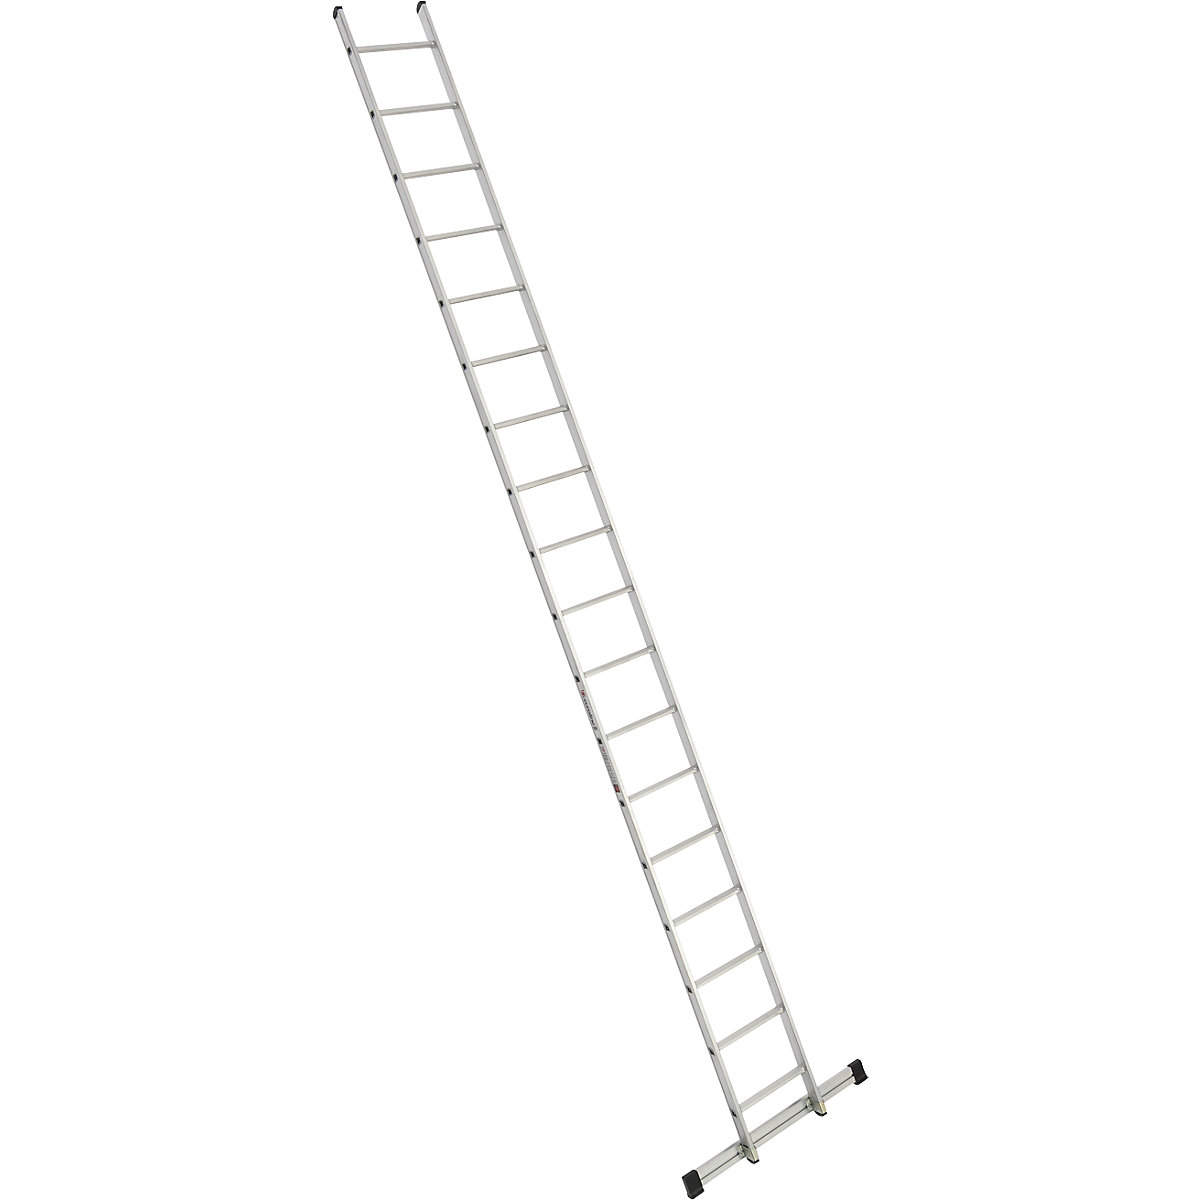 Escada de encosto – euroline, largura 410 mm, 18 degraus com travessa-2